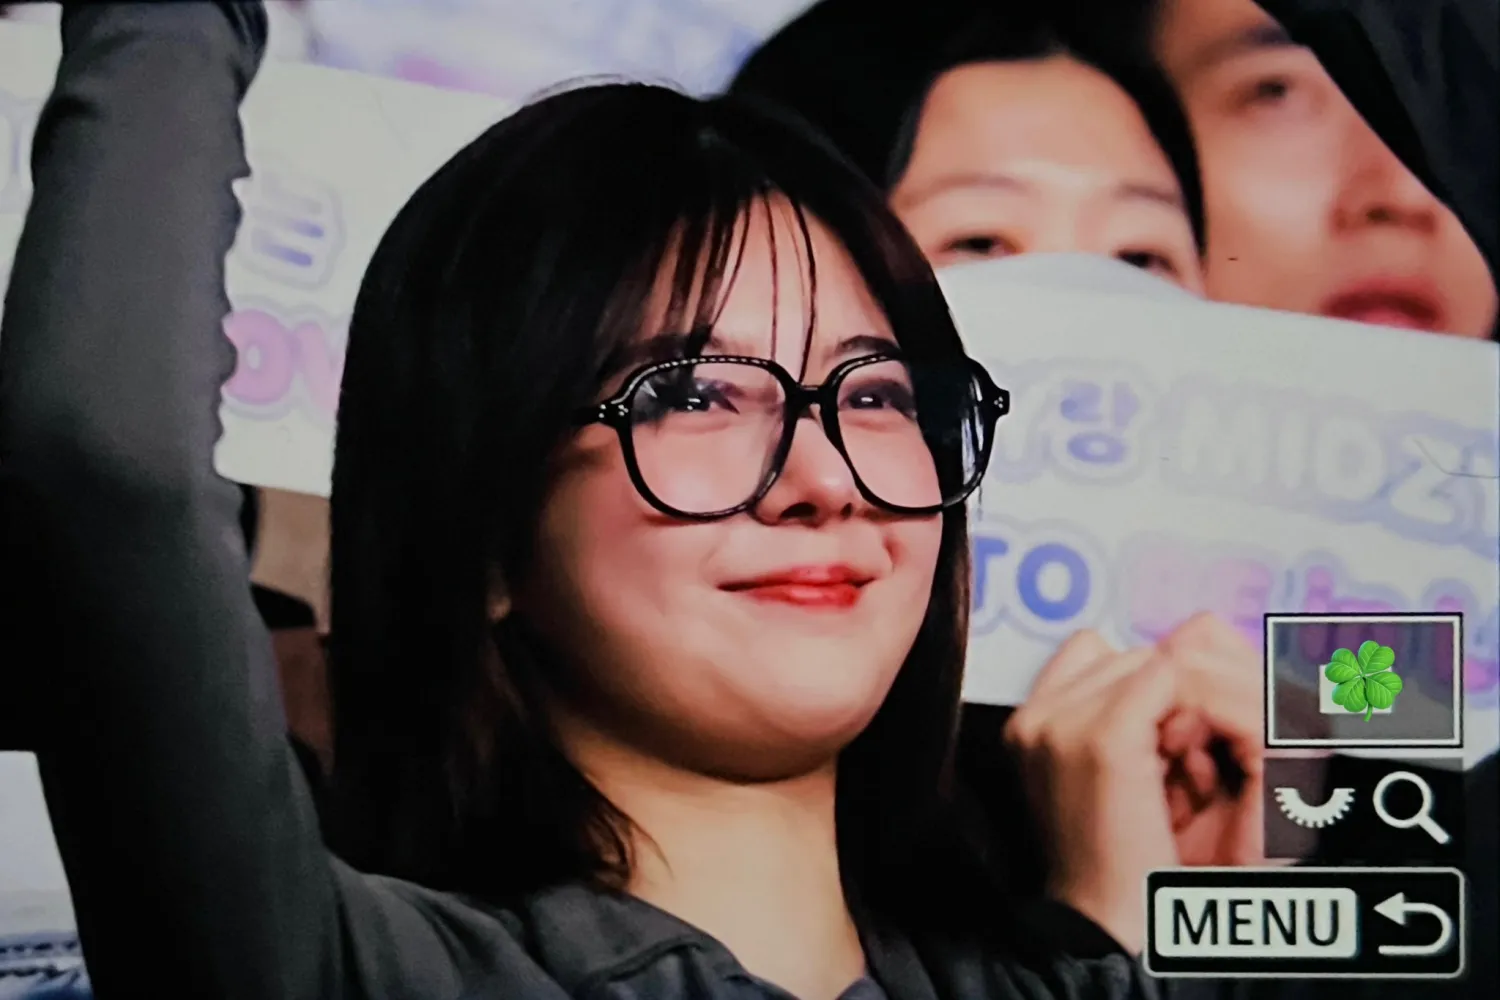 'MY OT5': ITZY Lia emociona a MIDZY al apoyar el concierto del grupo 'BORN TO BE' en Seúl